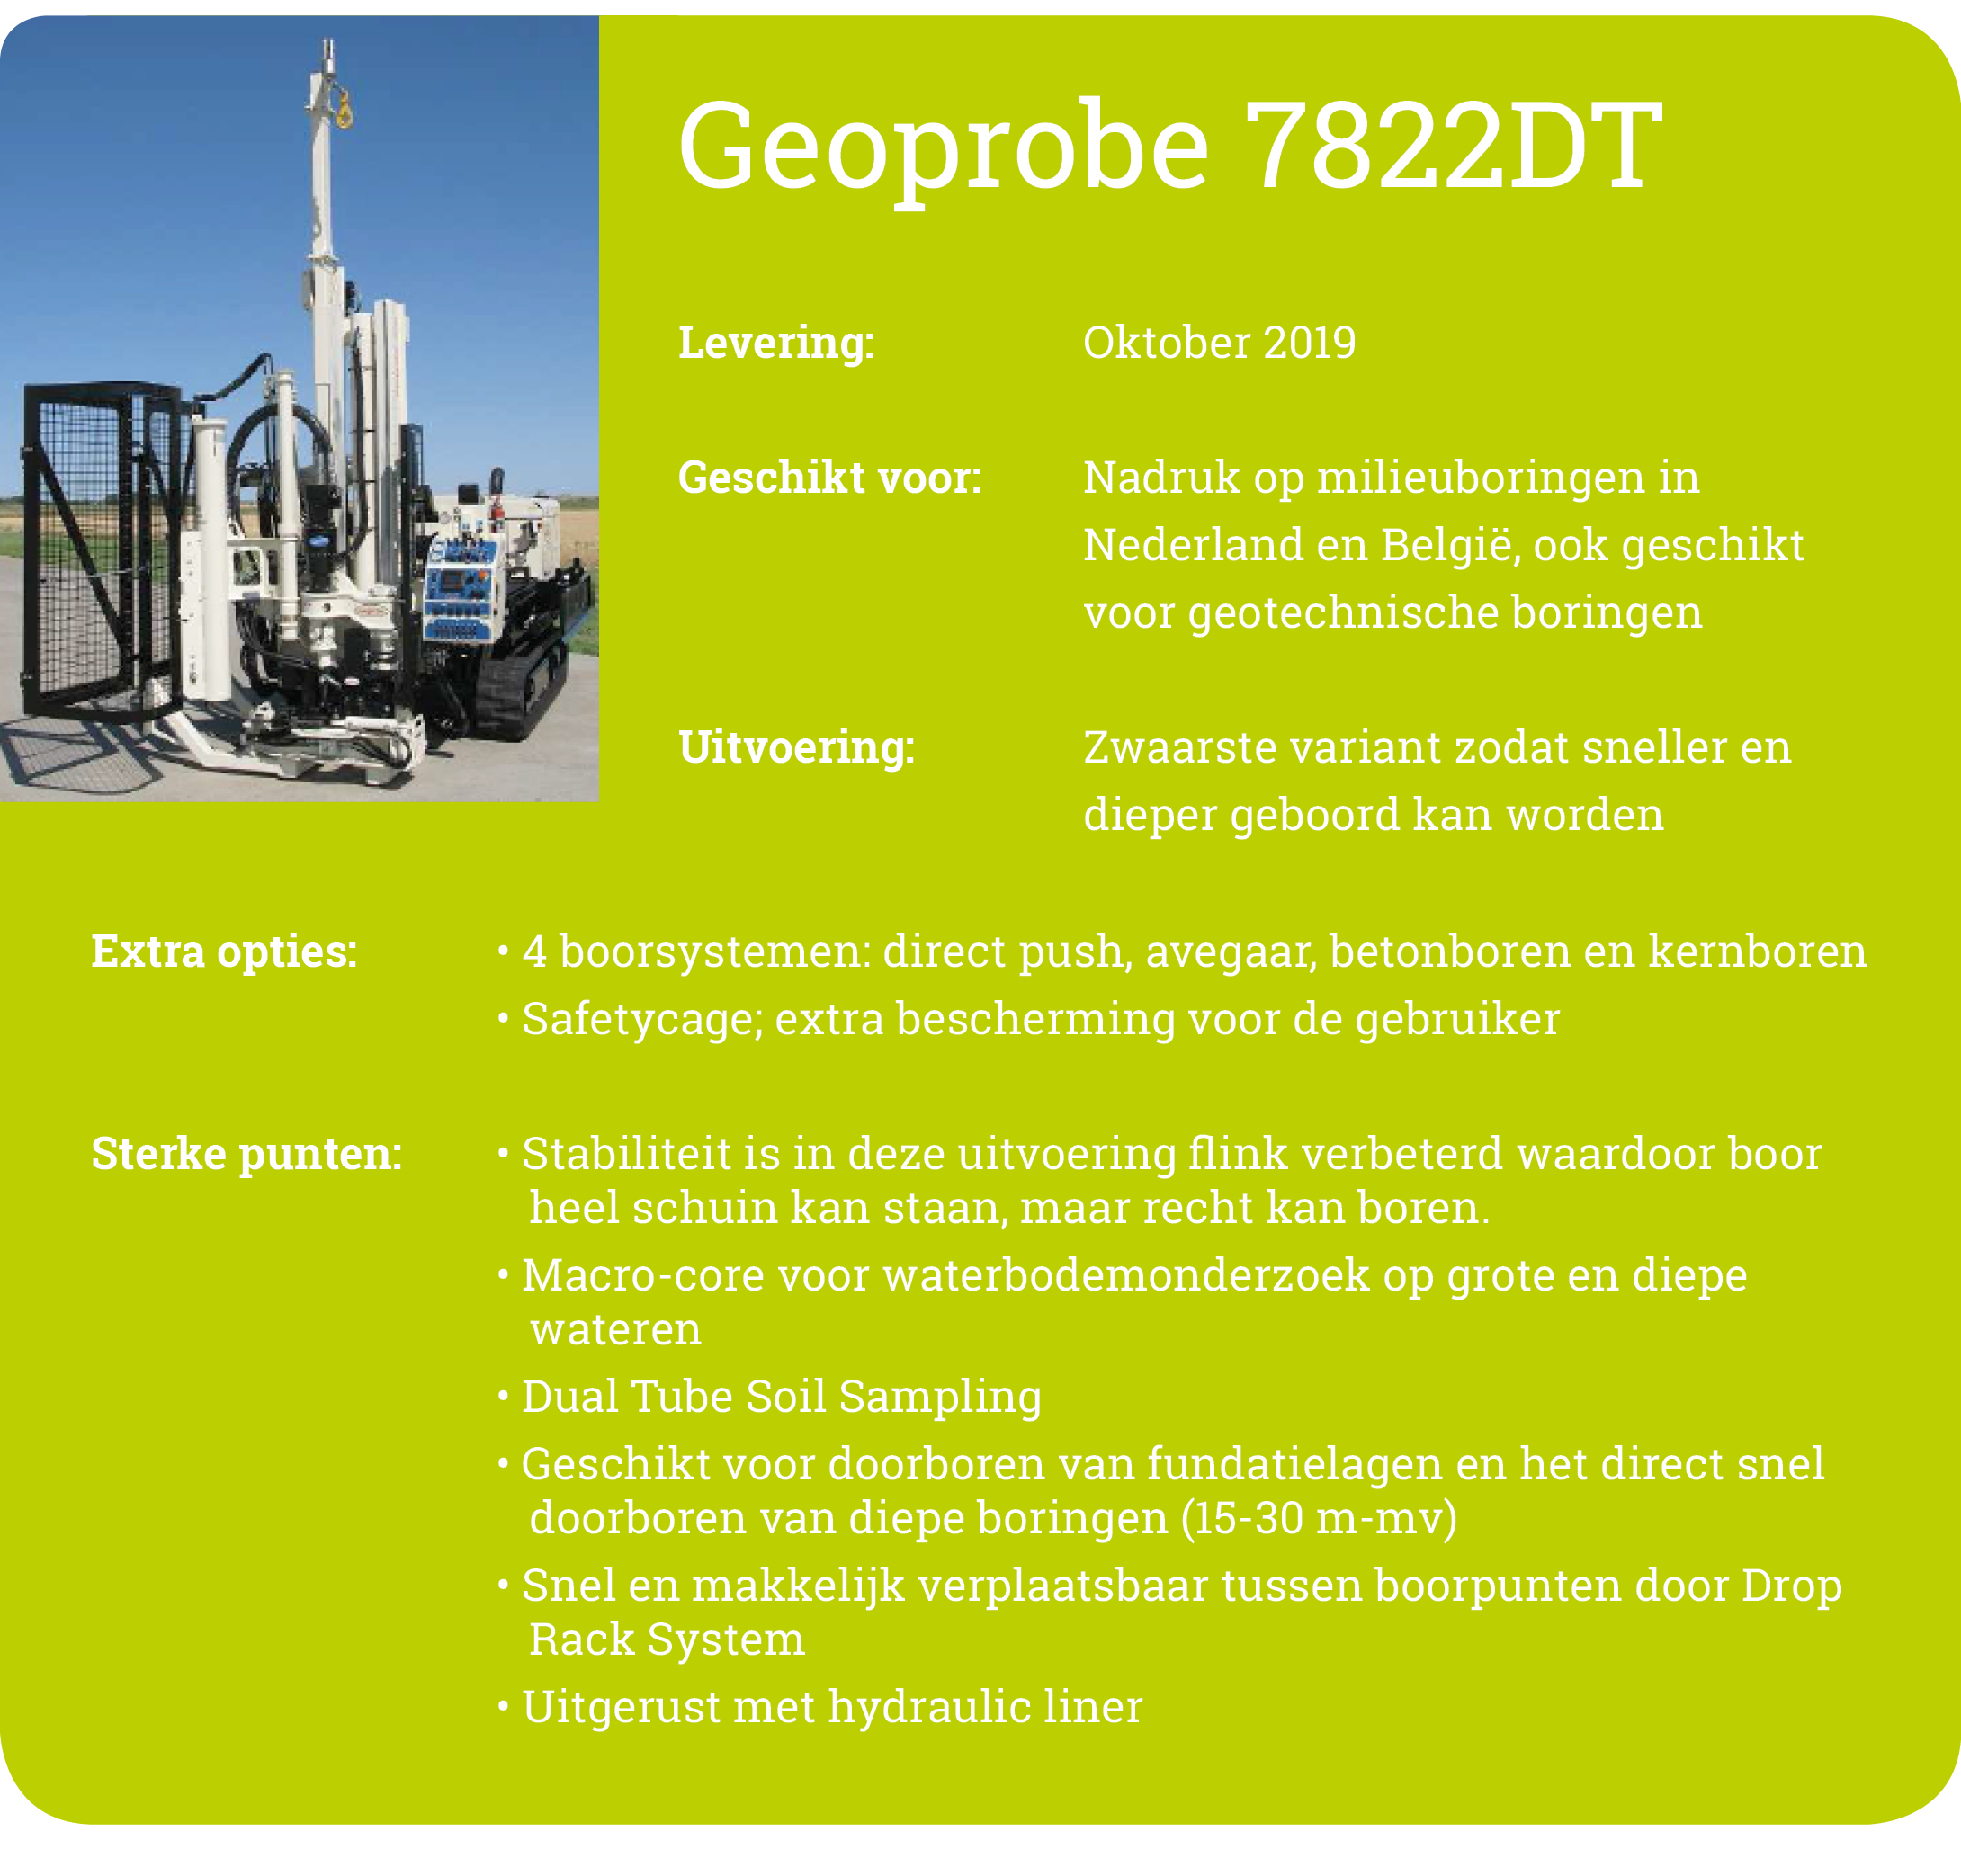 Geoprobe 7822DT